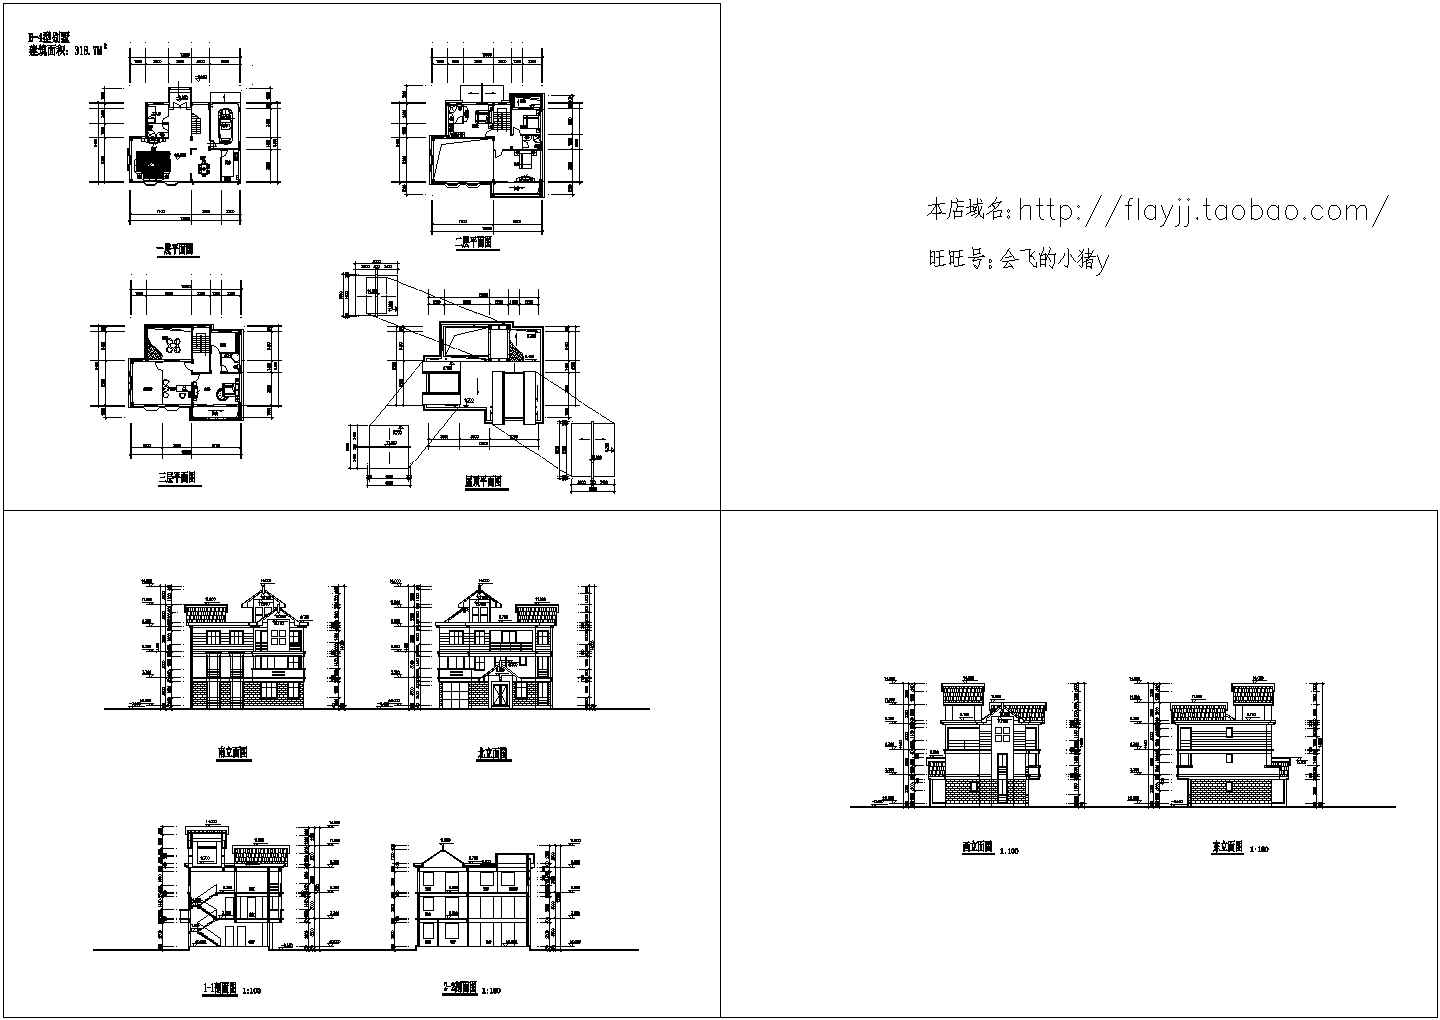 长13米 宽9.4米 3层318.7平米别墅建筑设计图